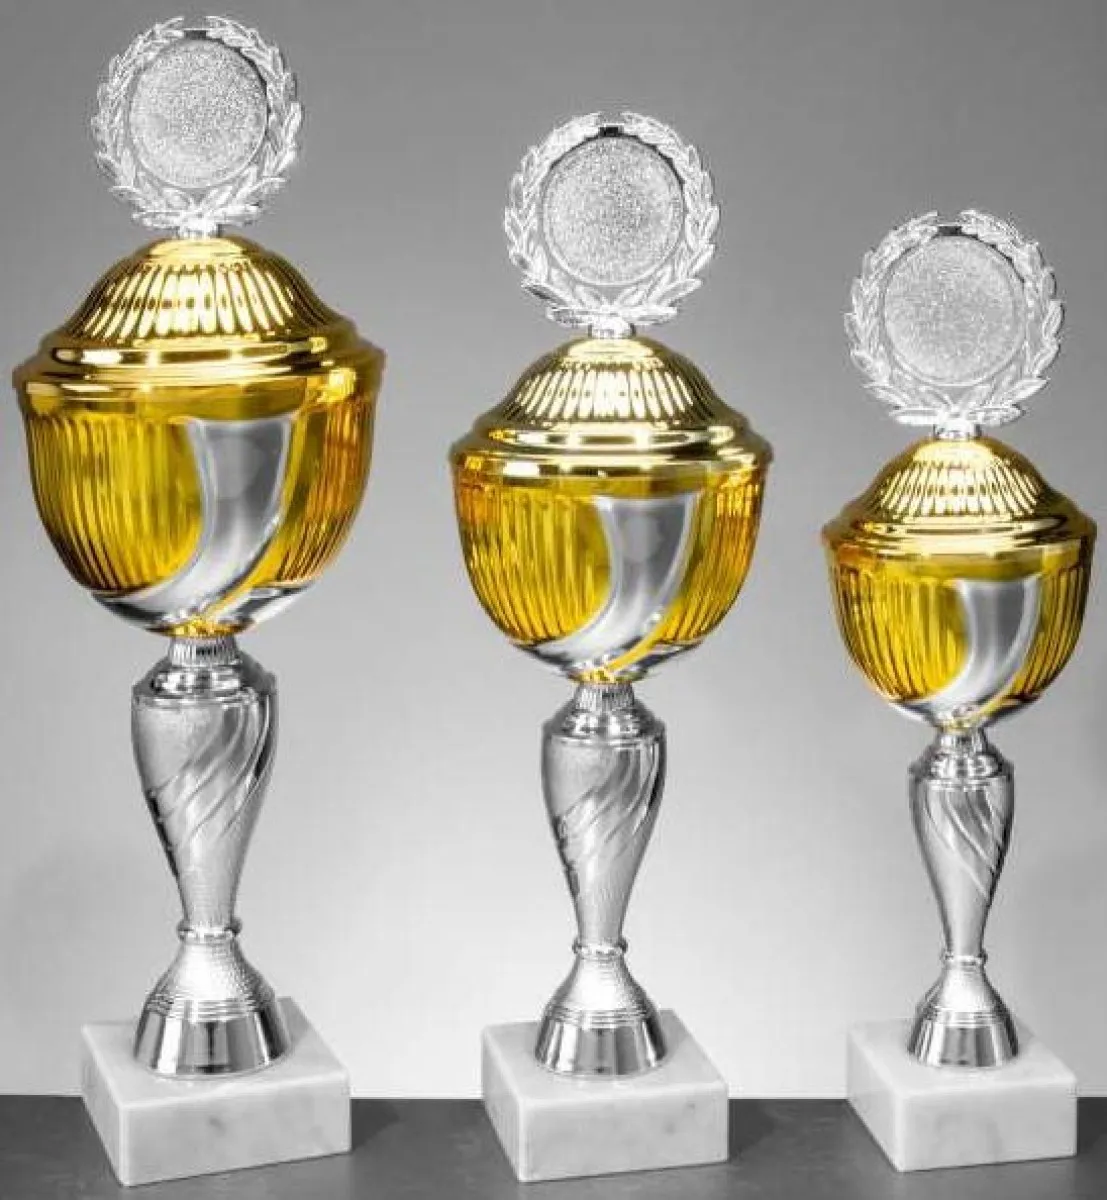 Trofeo Antonia plata/oro